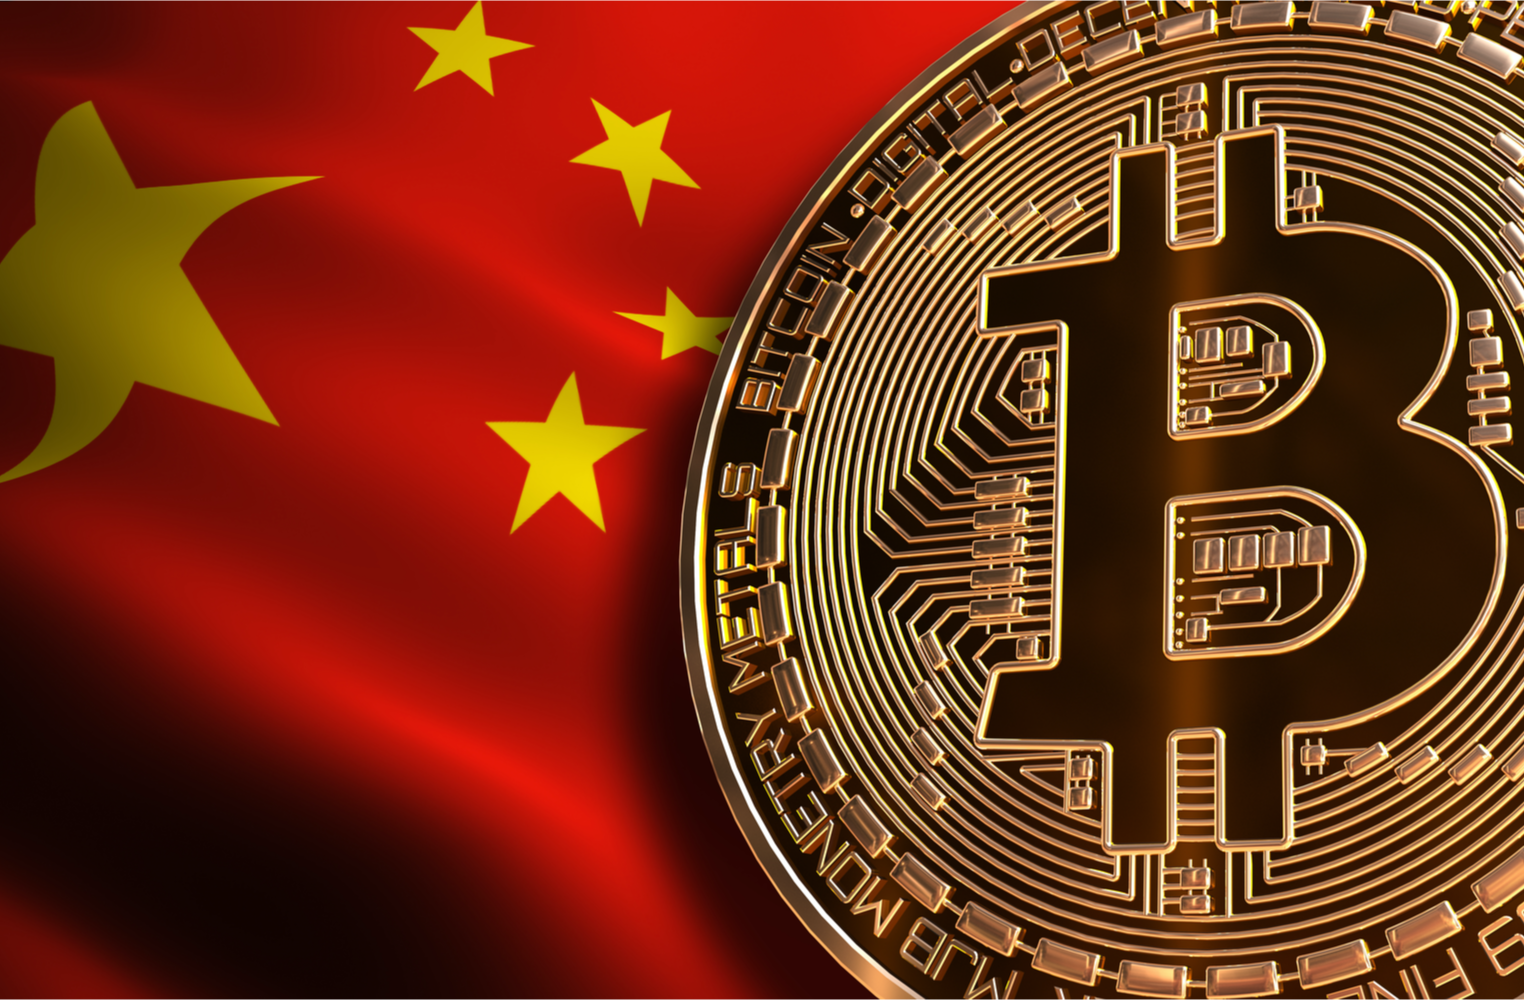 İç Moğolistan, Bitcoin Madenciliğine Yaptırım Getiren İlk Çin Bölgesi Oldu